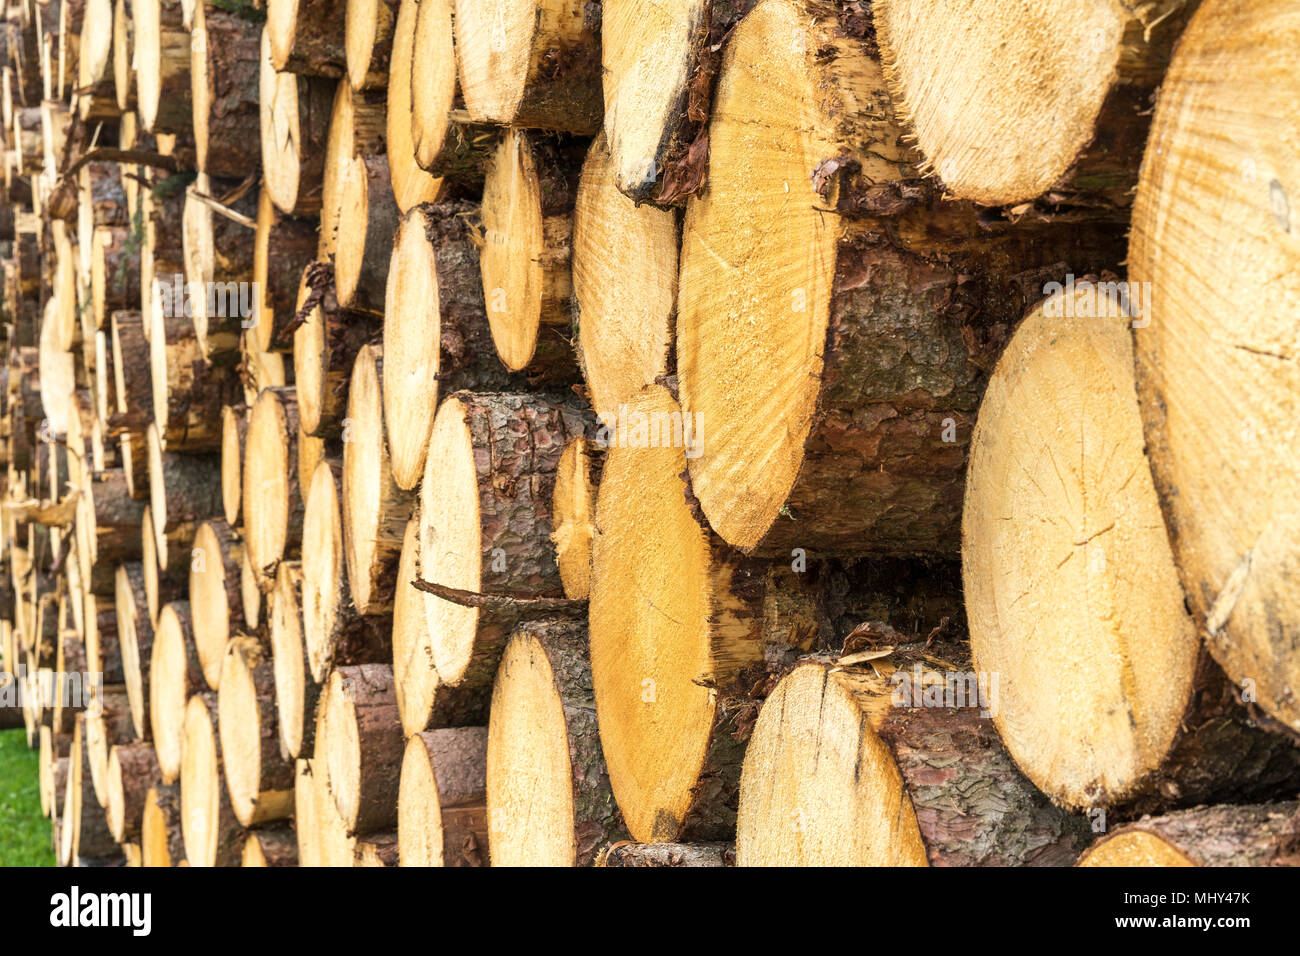 La récolte du bois dans les Alpes bavaroises, Allemagne Banque D'Images